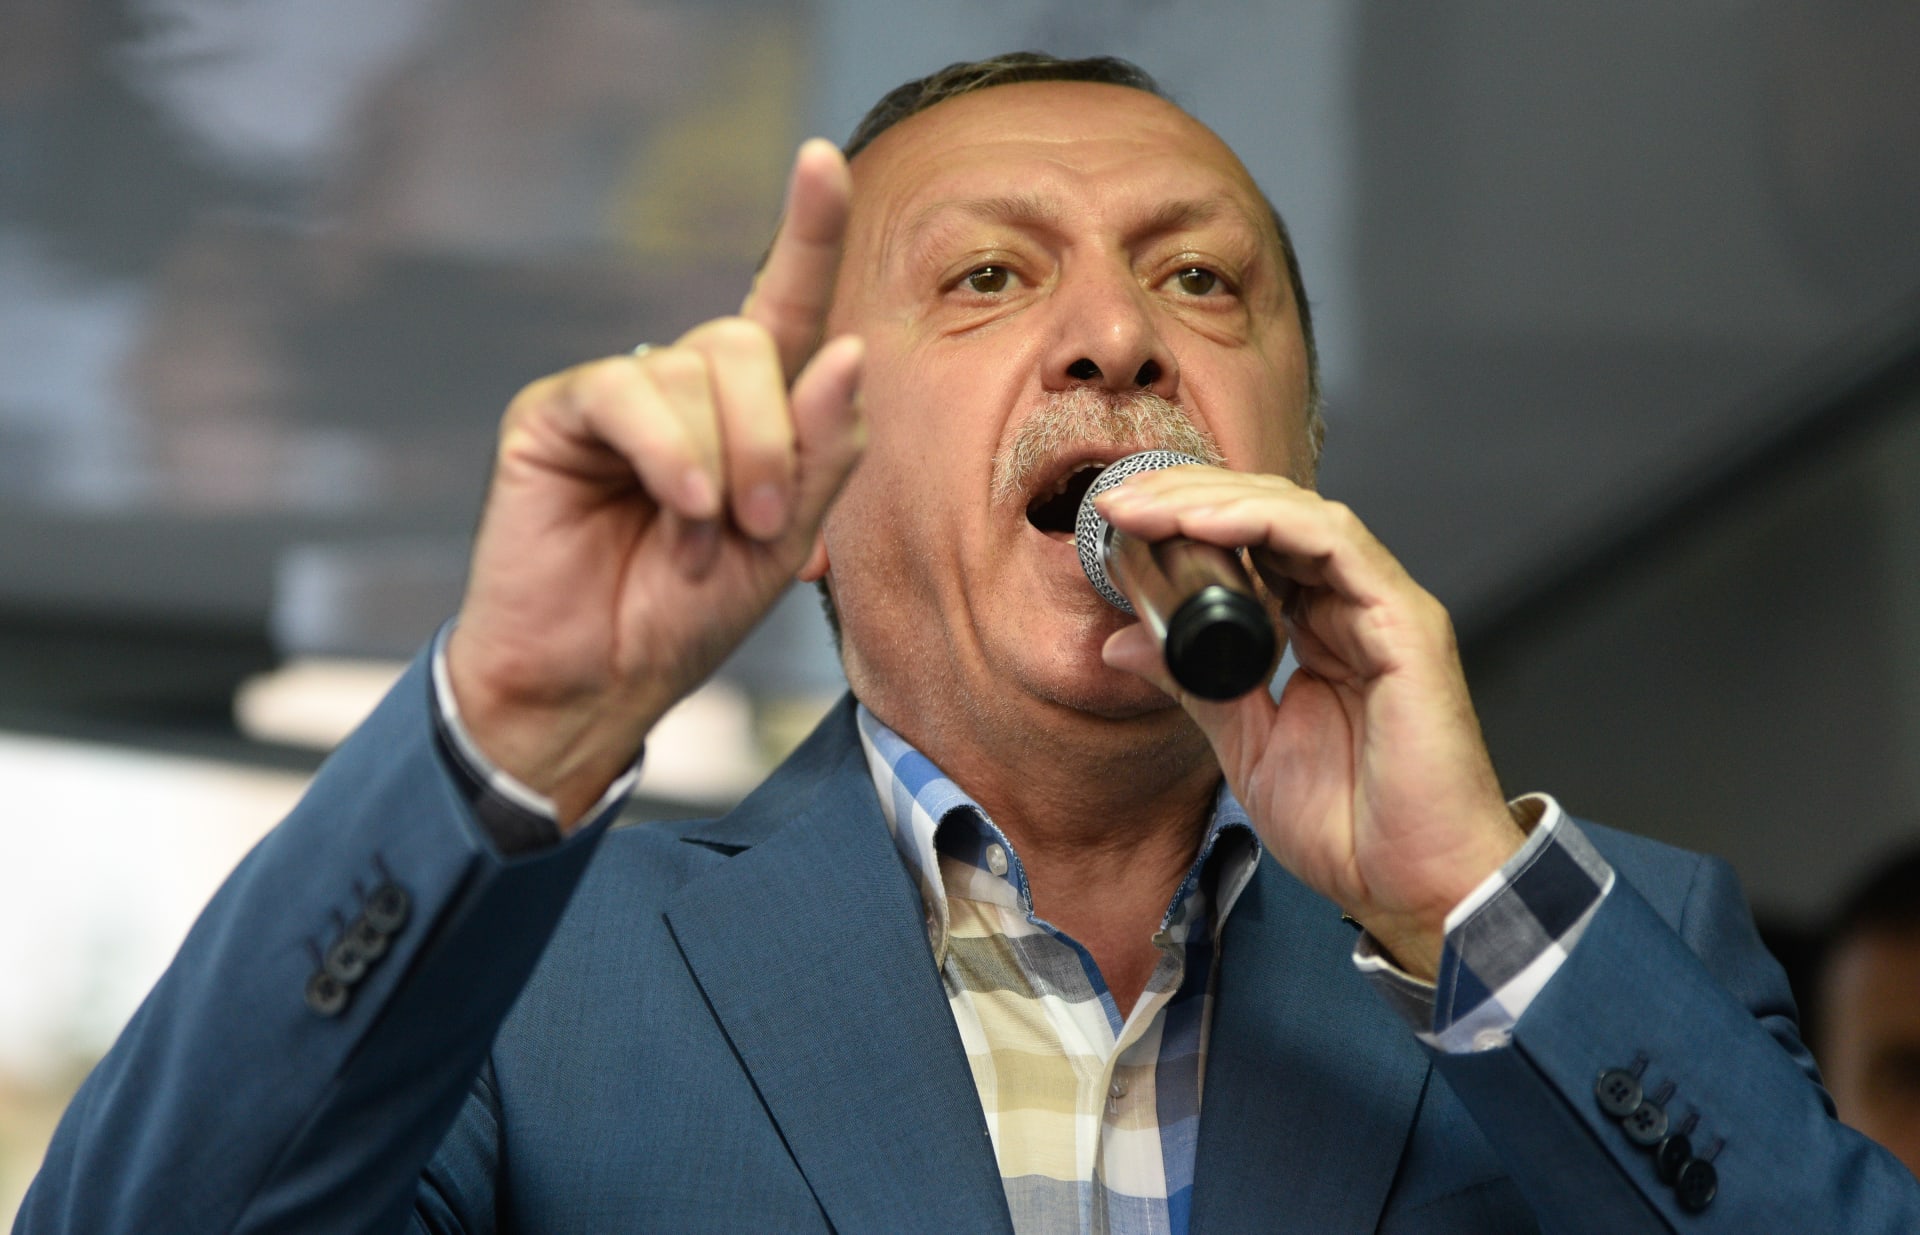 بذكرى تأسس الاتحاد الأوروبي.. أردوغان يهاجم أوروبا: تحالفكم "صليبي" وترفضون تركيا لأنها مسلمة